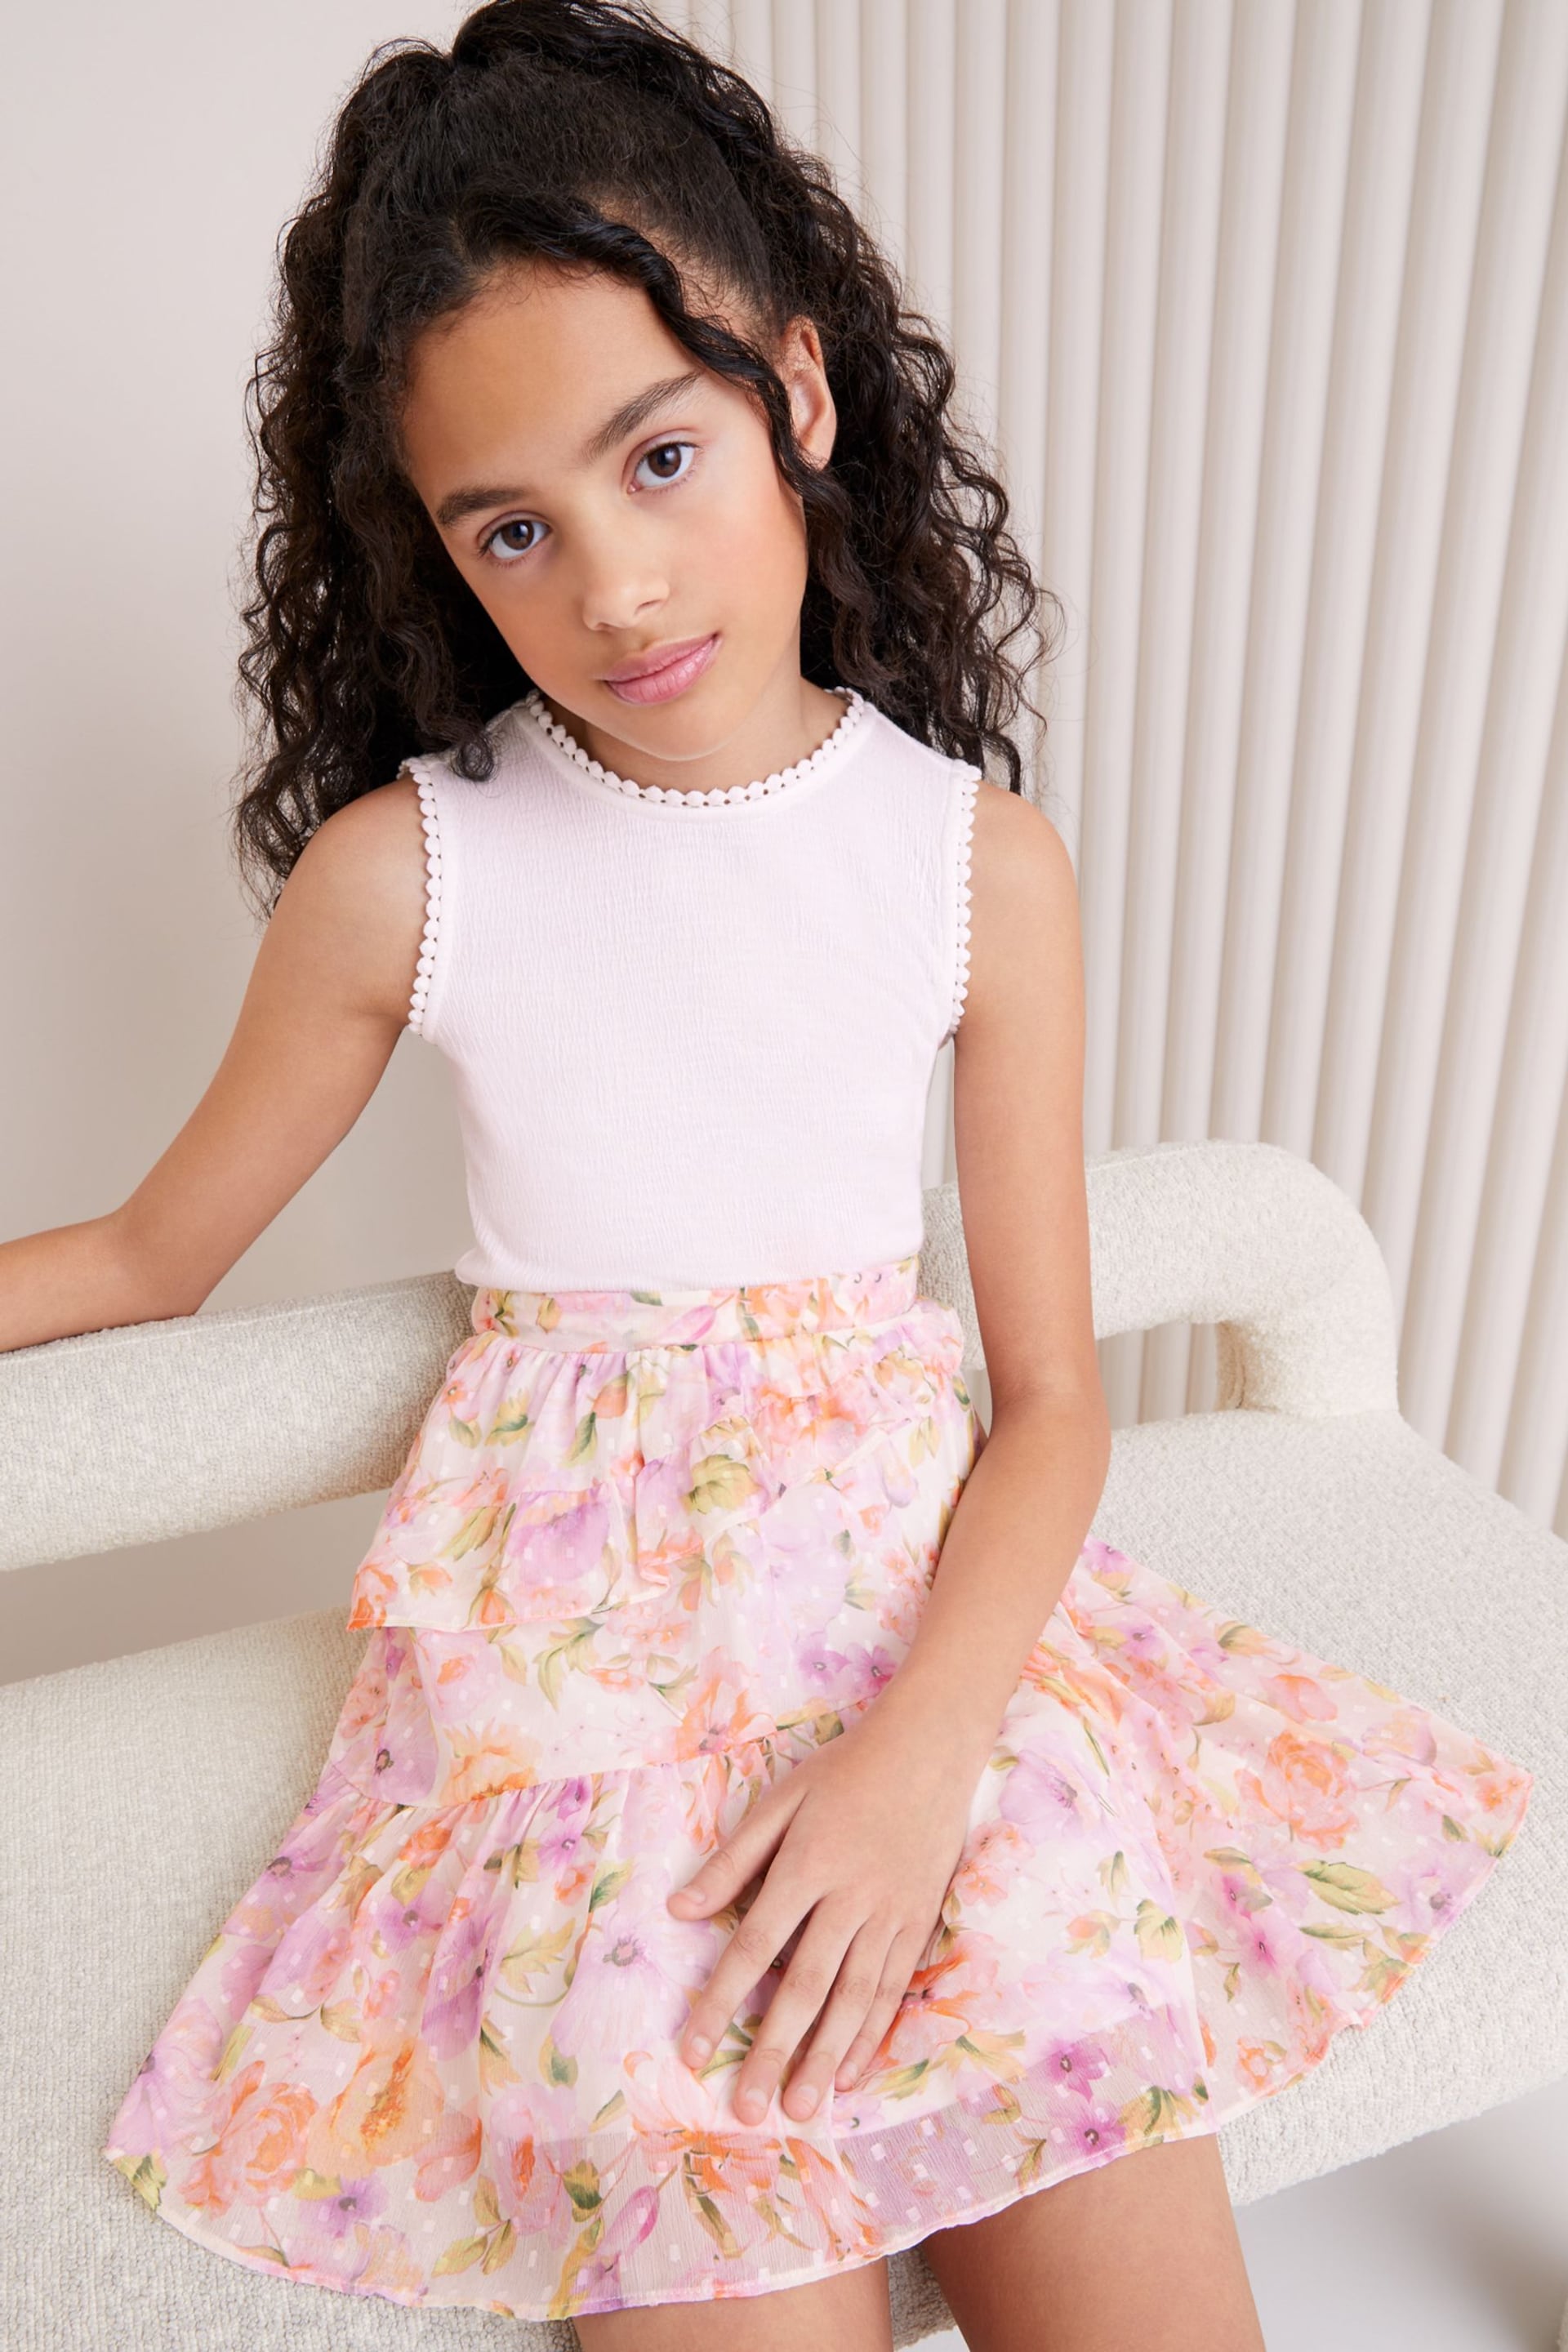 Lipsy White/Pink Chiffon Skirt Dress (5-16yrs) - Image 2 of 4